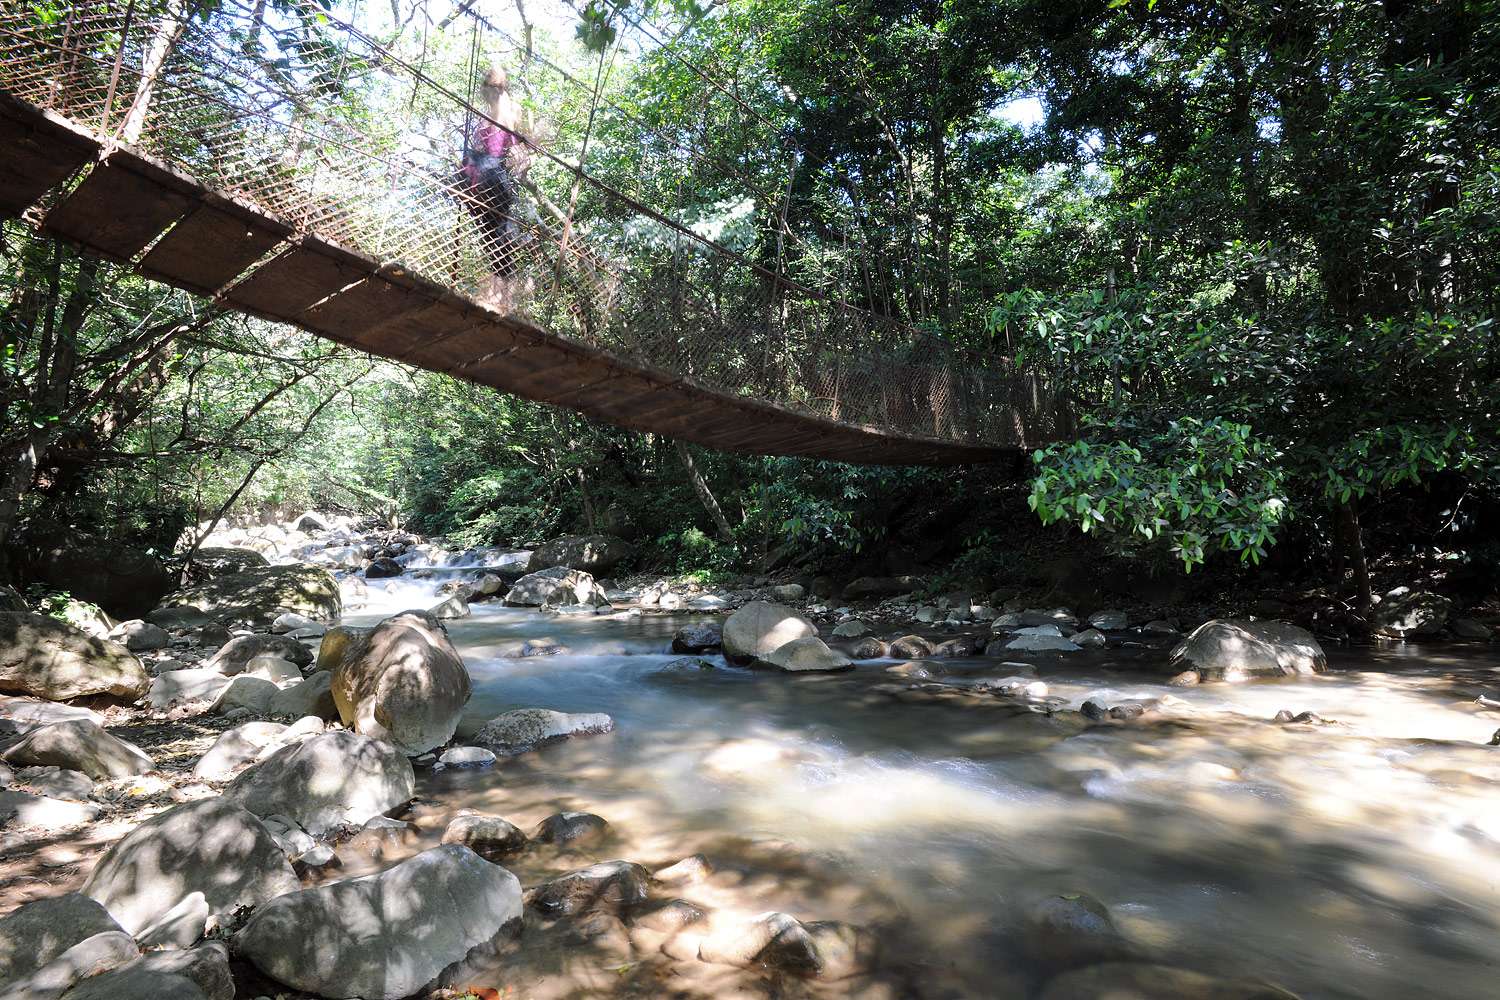 Hanging bridge in Bubbling mud, Rincón de la Vieja, Costa Rica.